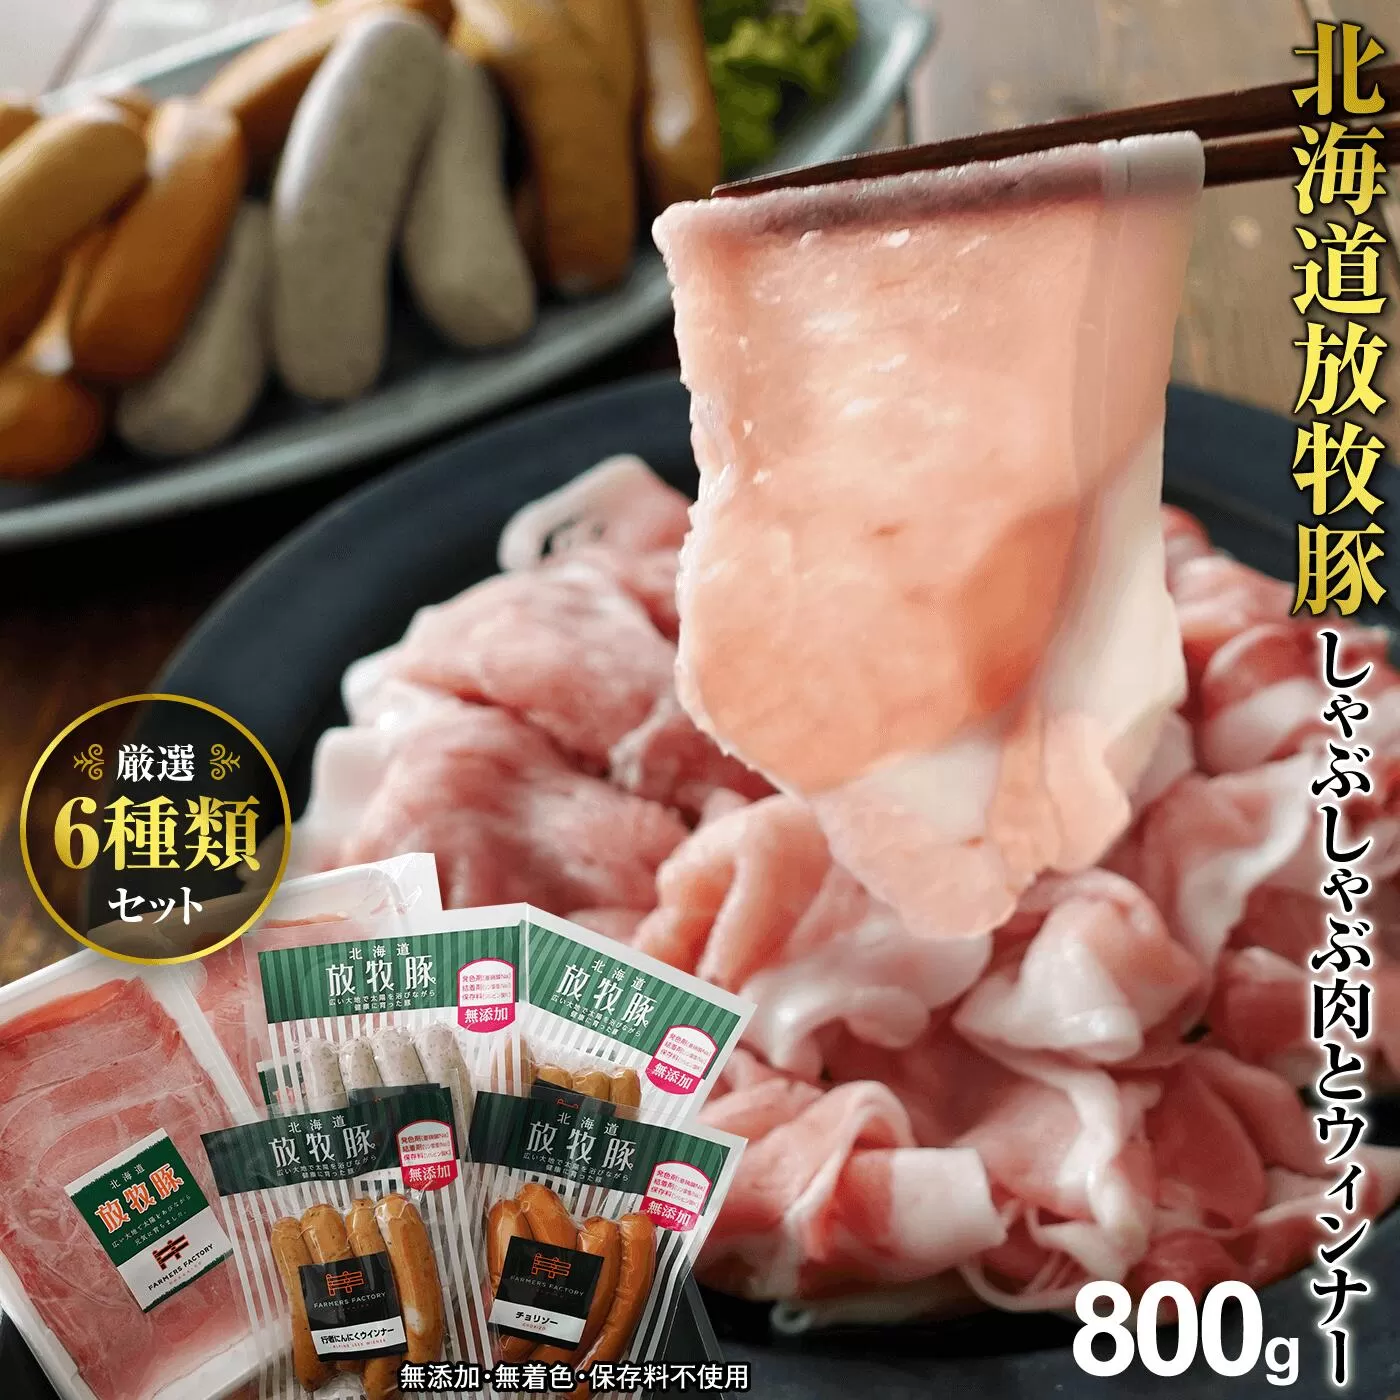 北海道産放牧豚 無添加ウインナーとしゃぶしゃぶ肉セット《北海道恵庭市》【120001】